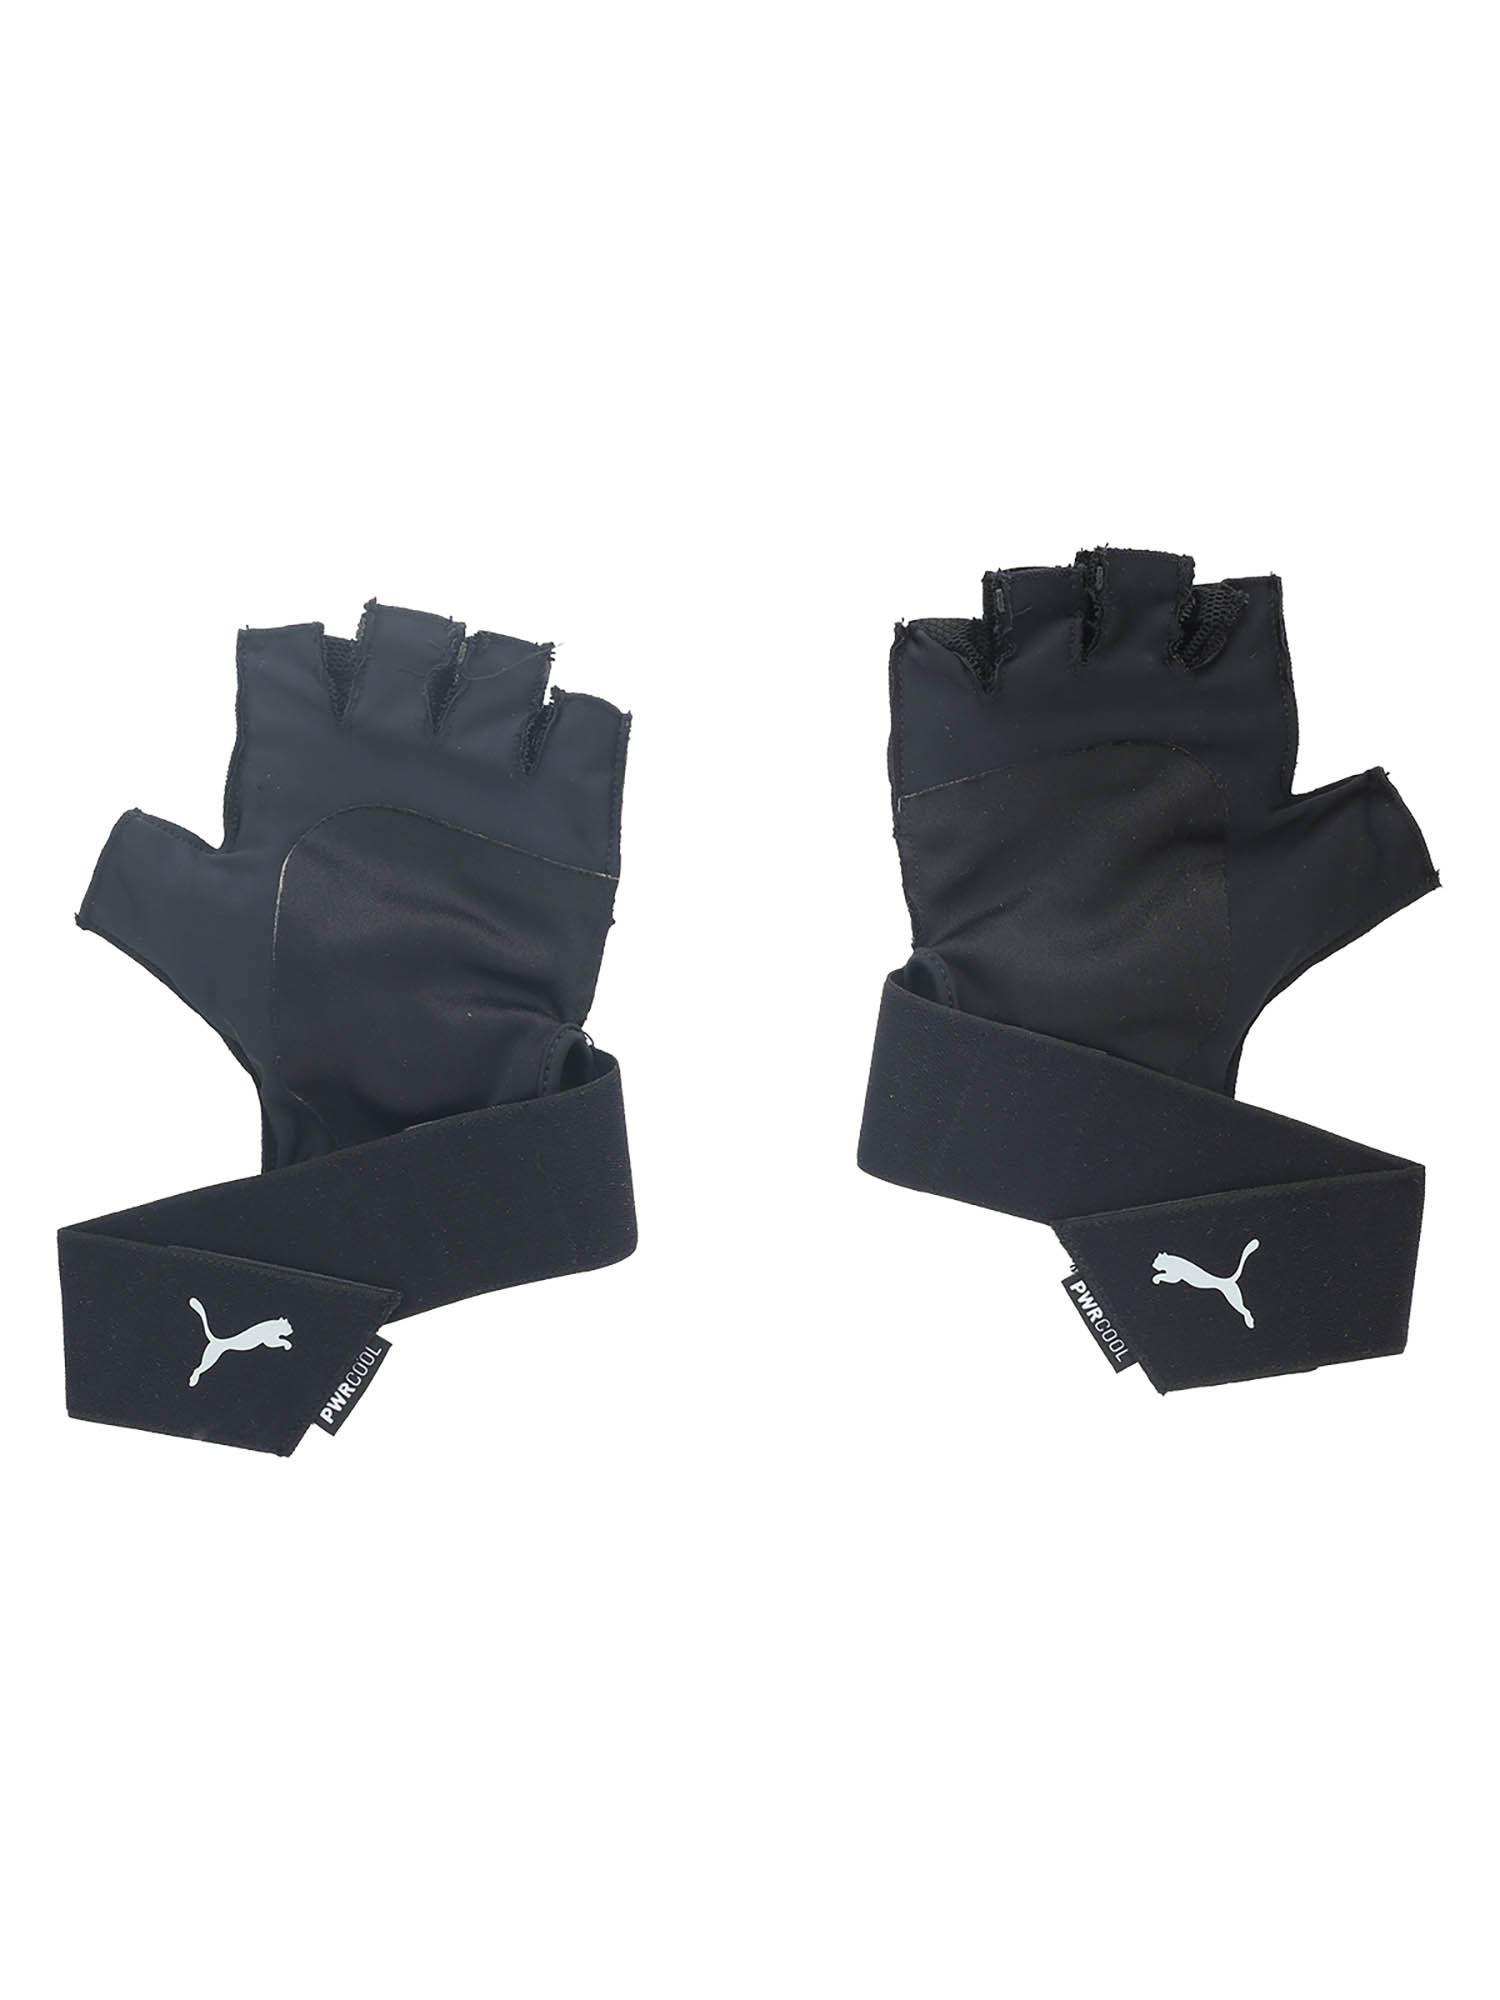 tr ess premium black gloves